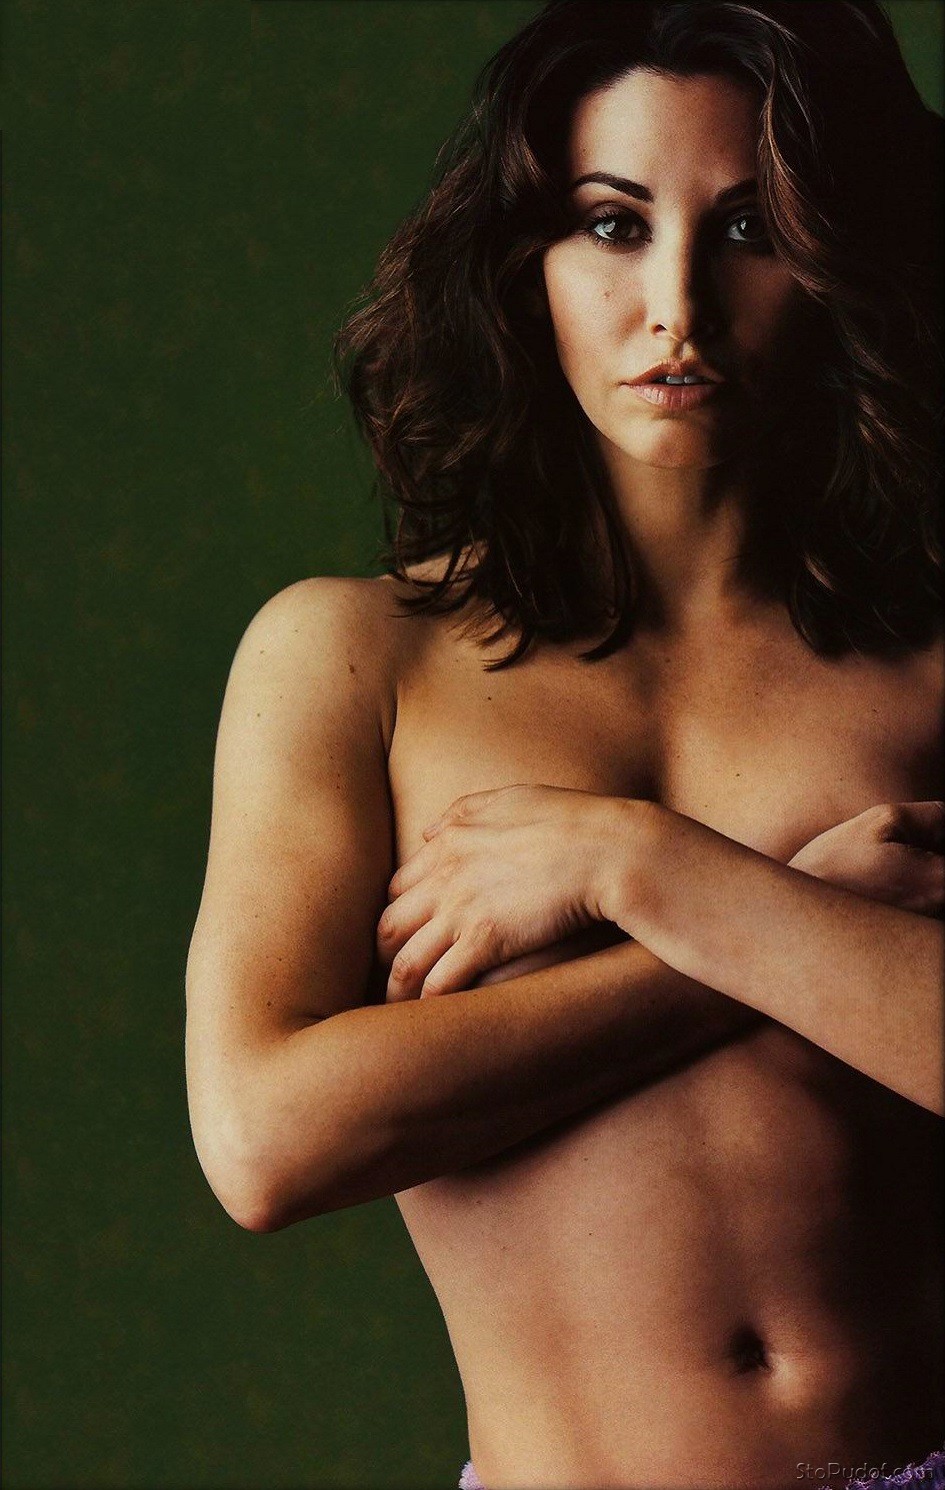 Gina Gershon nude internet photos - UkPhotoSafari